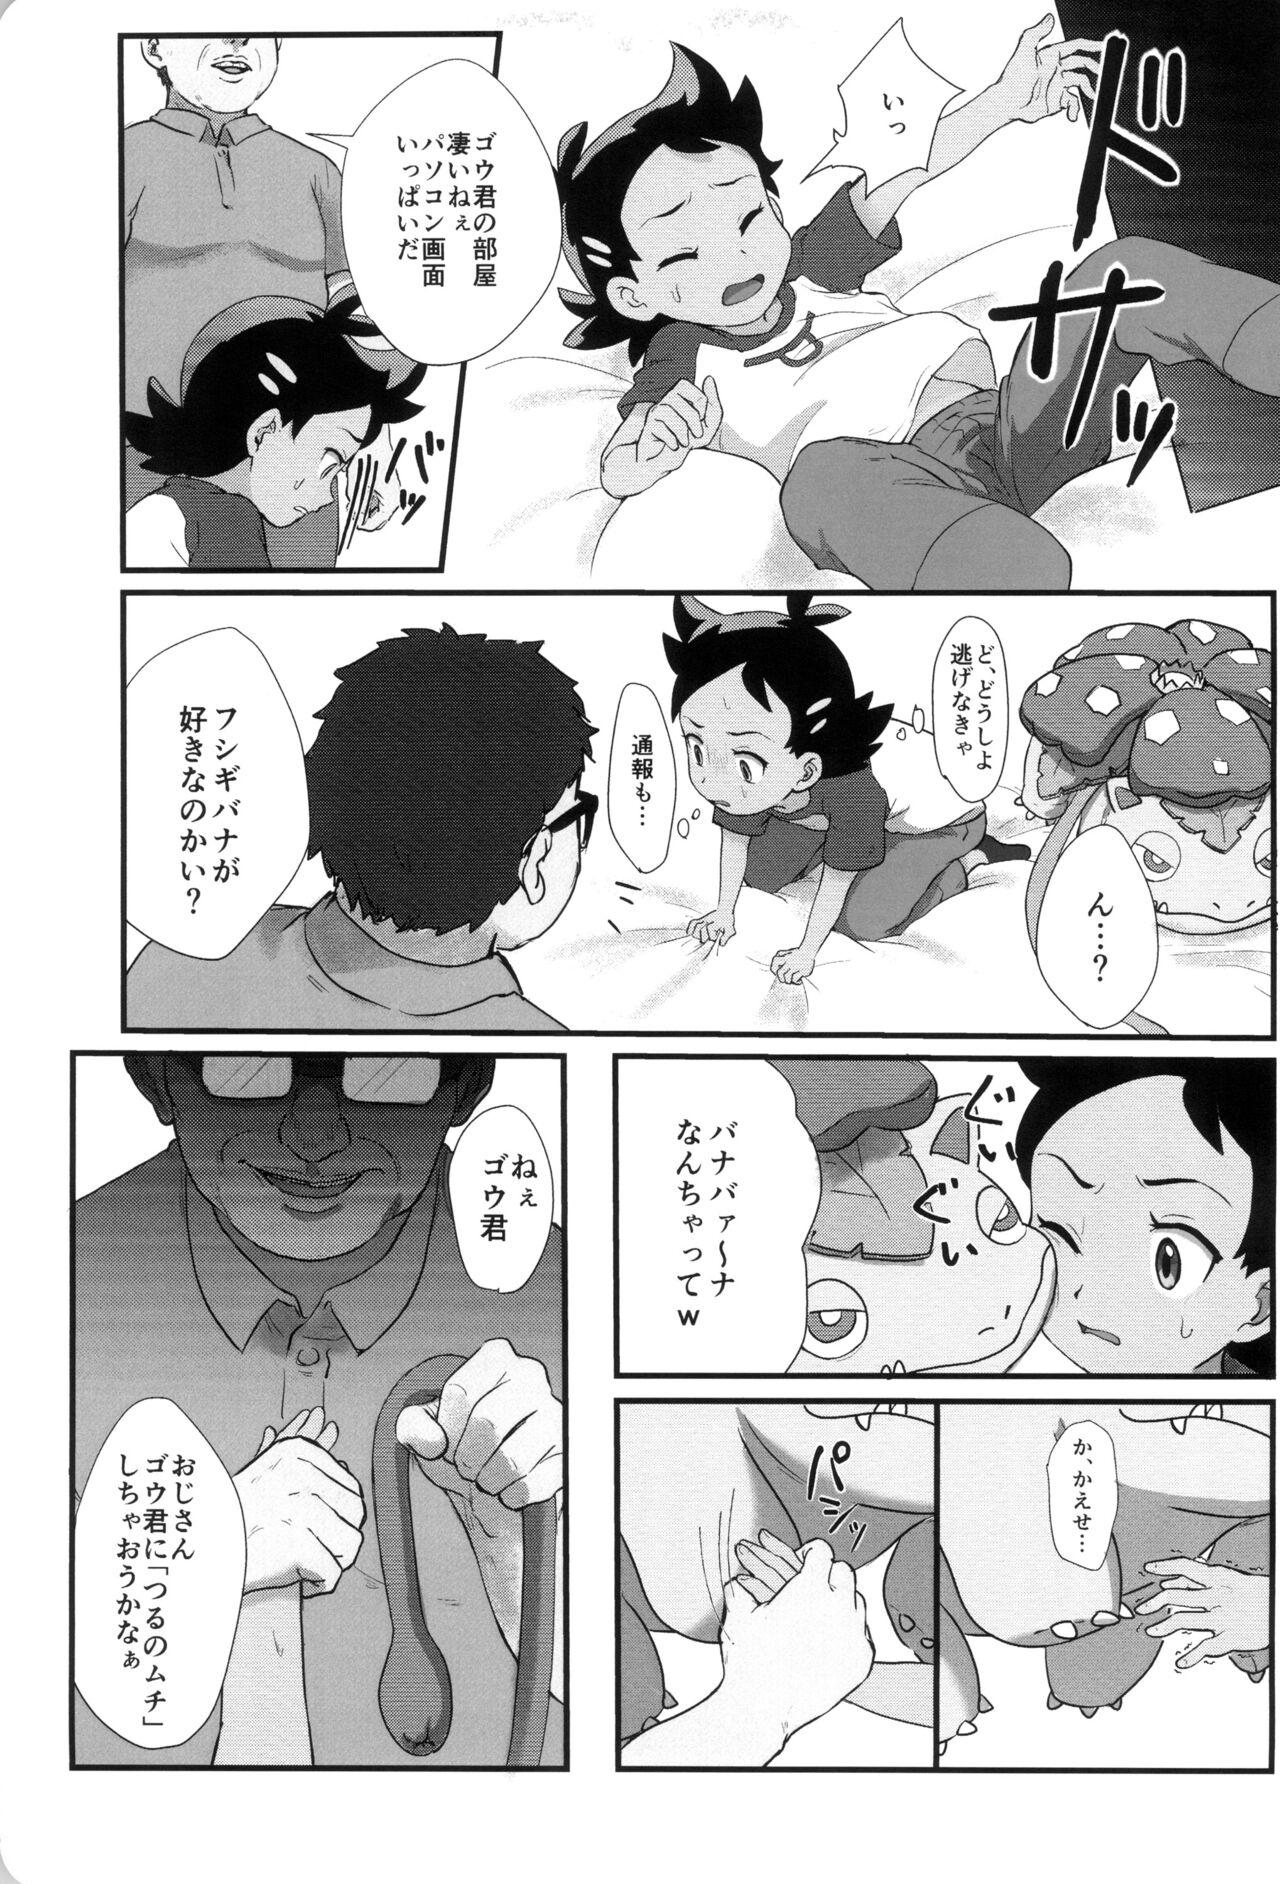 Porno 18 Banabana ga inai no wa danefusshi - Pokemon | pocket monsters Peitos - Page 11